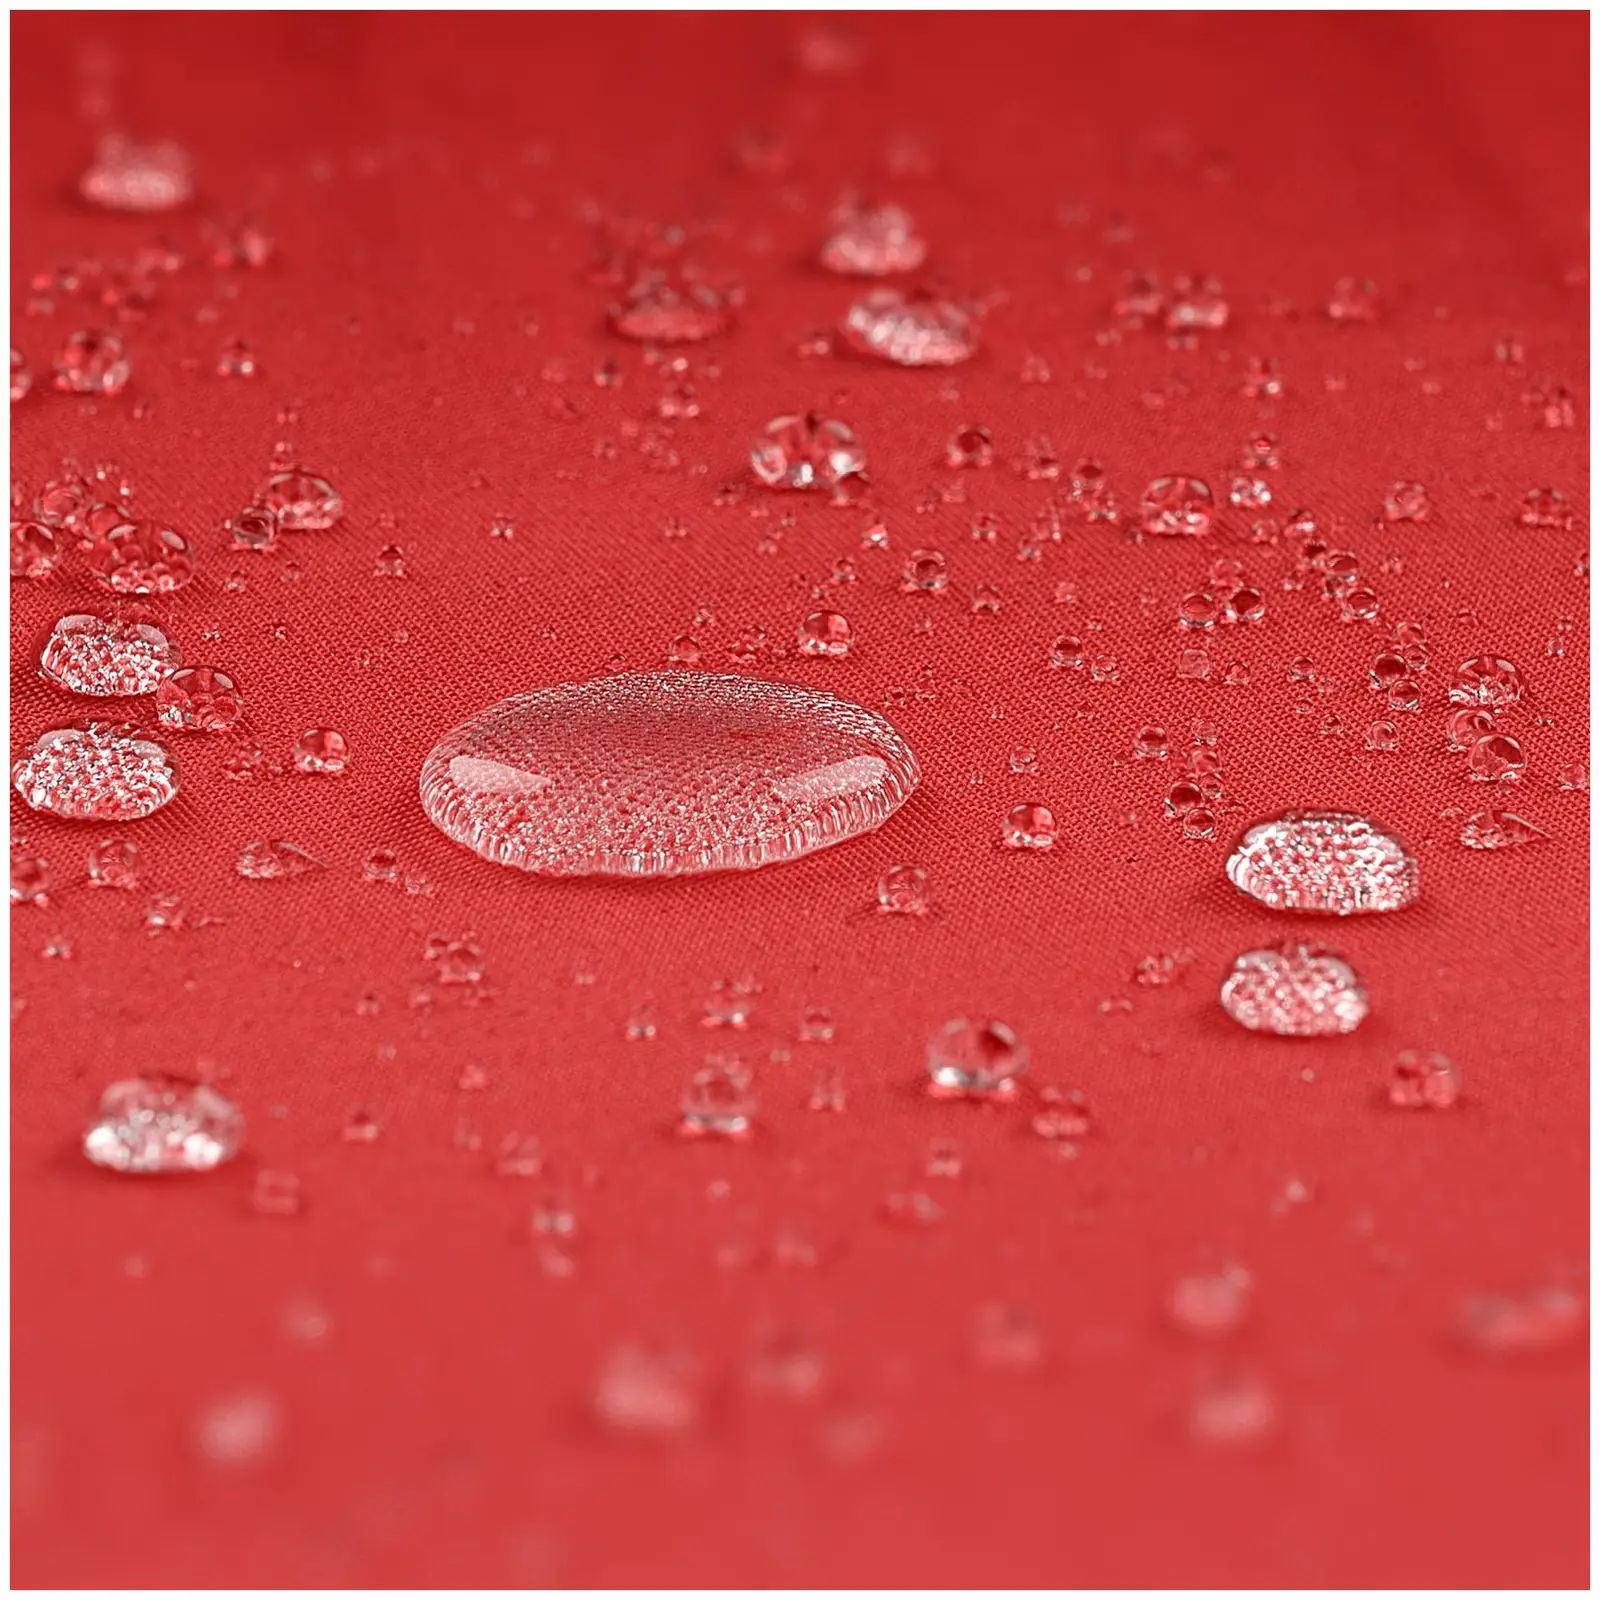 Andrahandssortering Hängparasoll - rött - rektangulärt - 250 x 250 cm - kan lutas